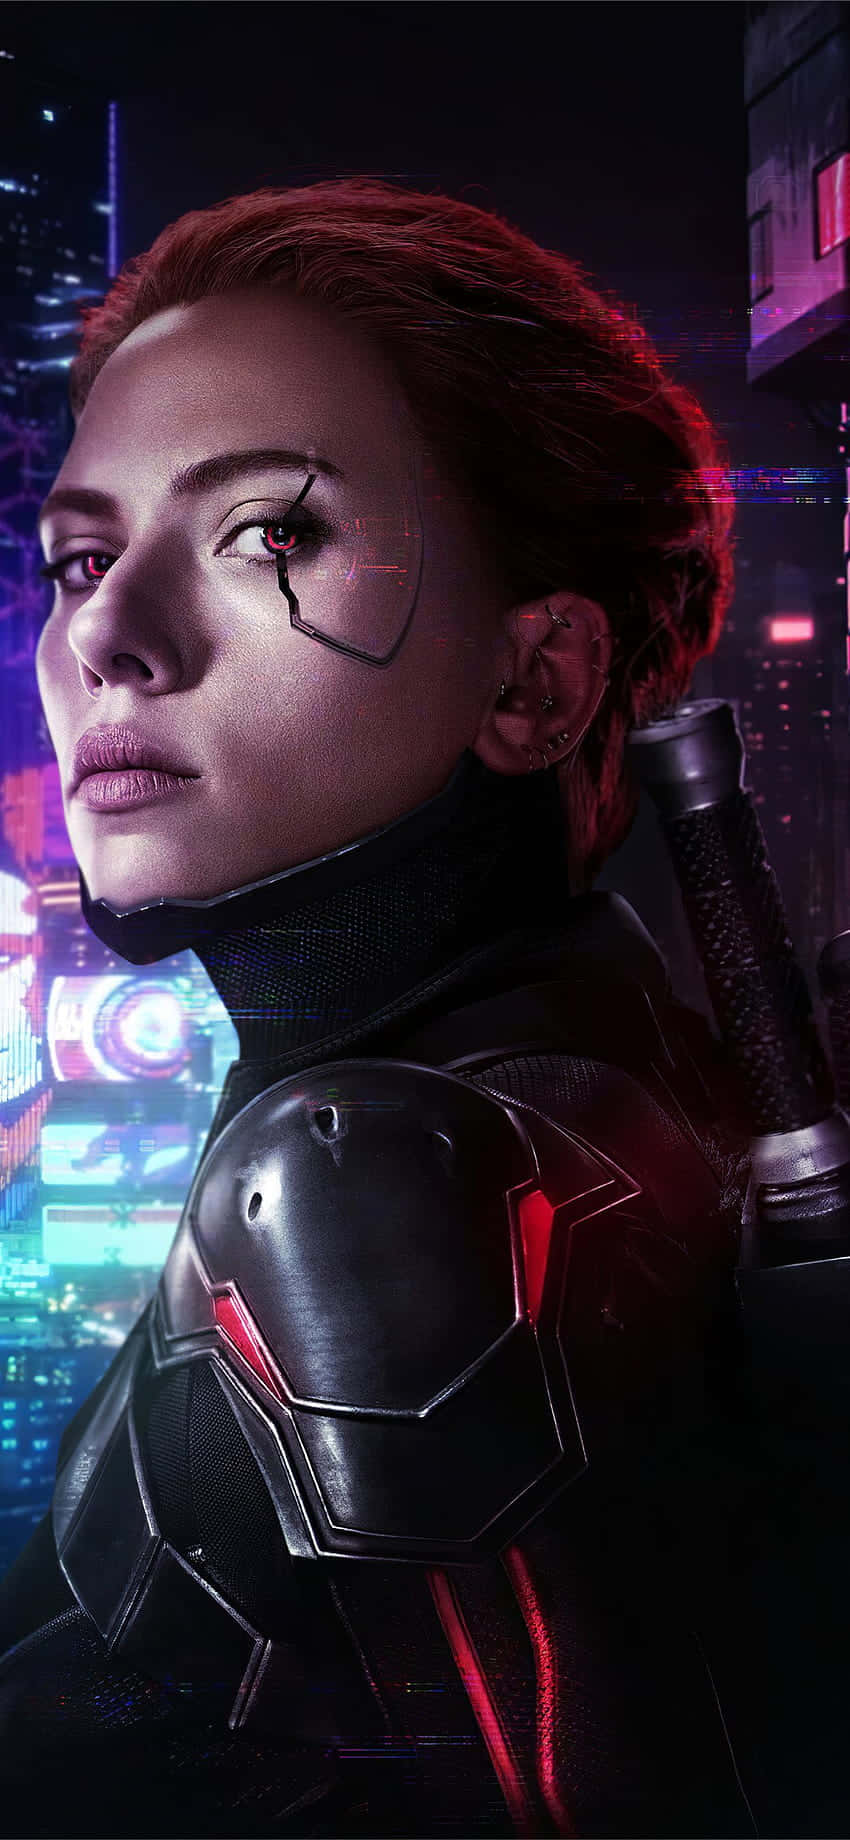 Fondode Pantalla De Iphone X De Cyberpunk 2077 Editado Con Scarlett Johansson.